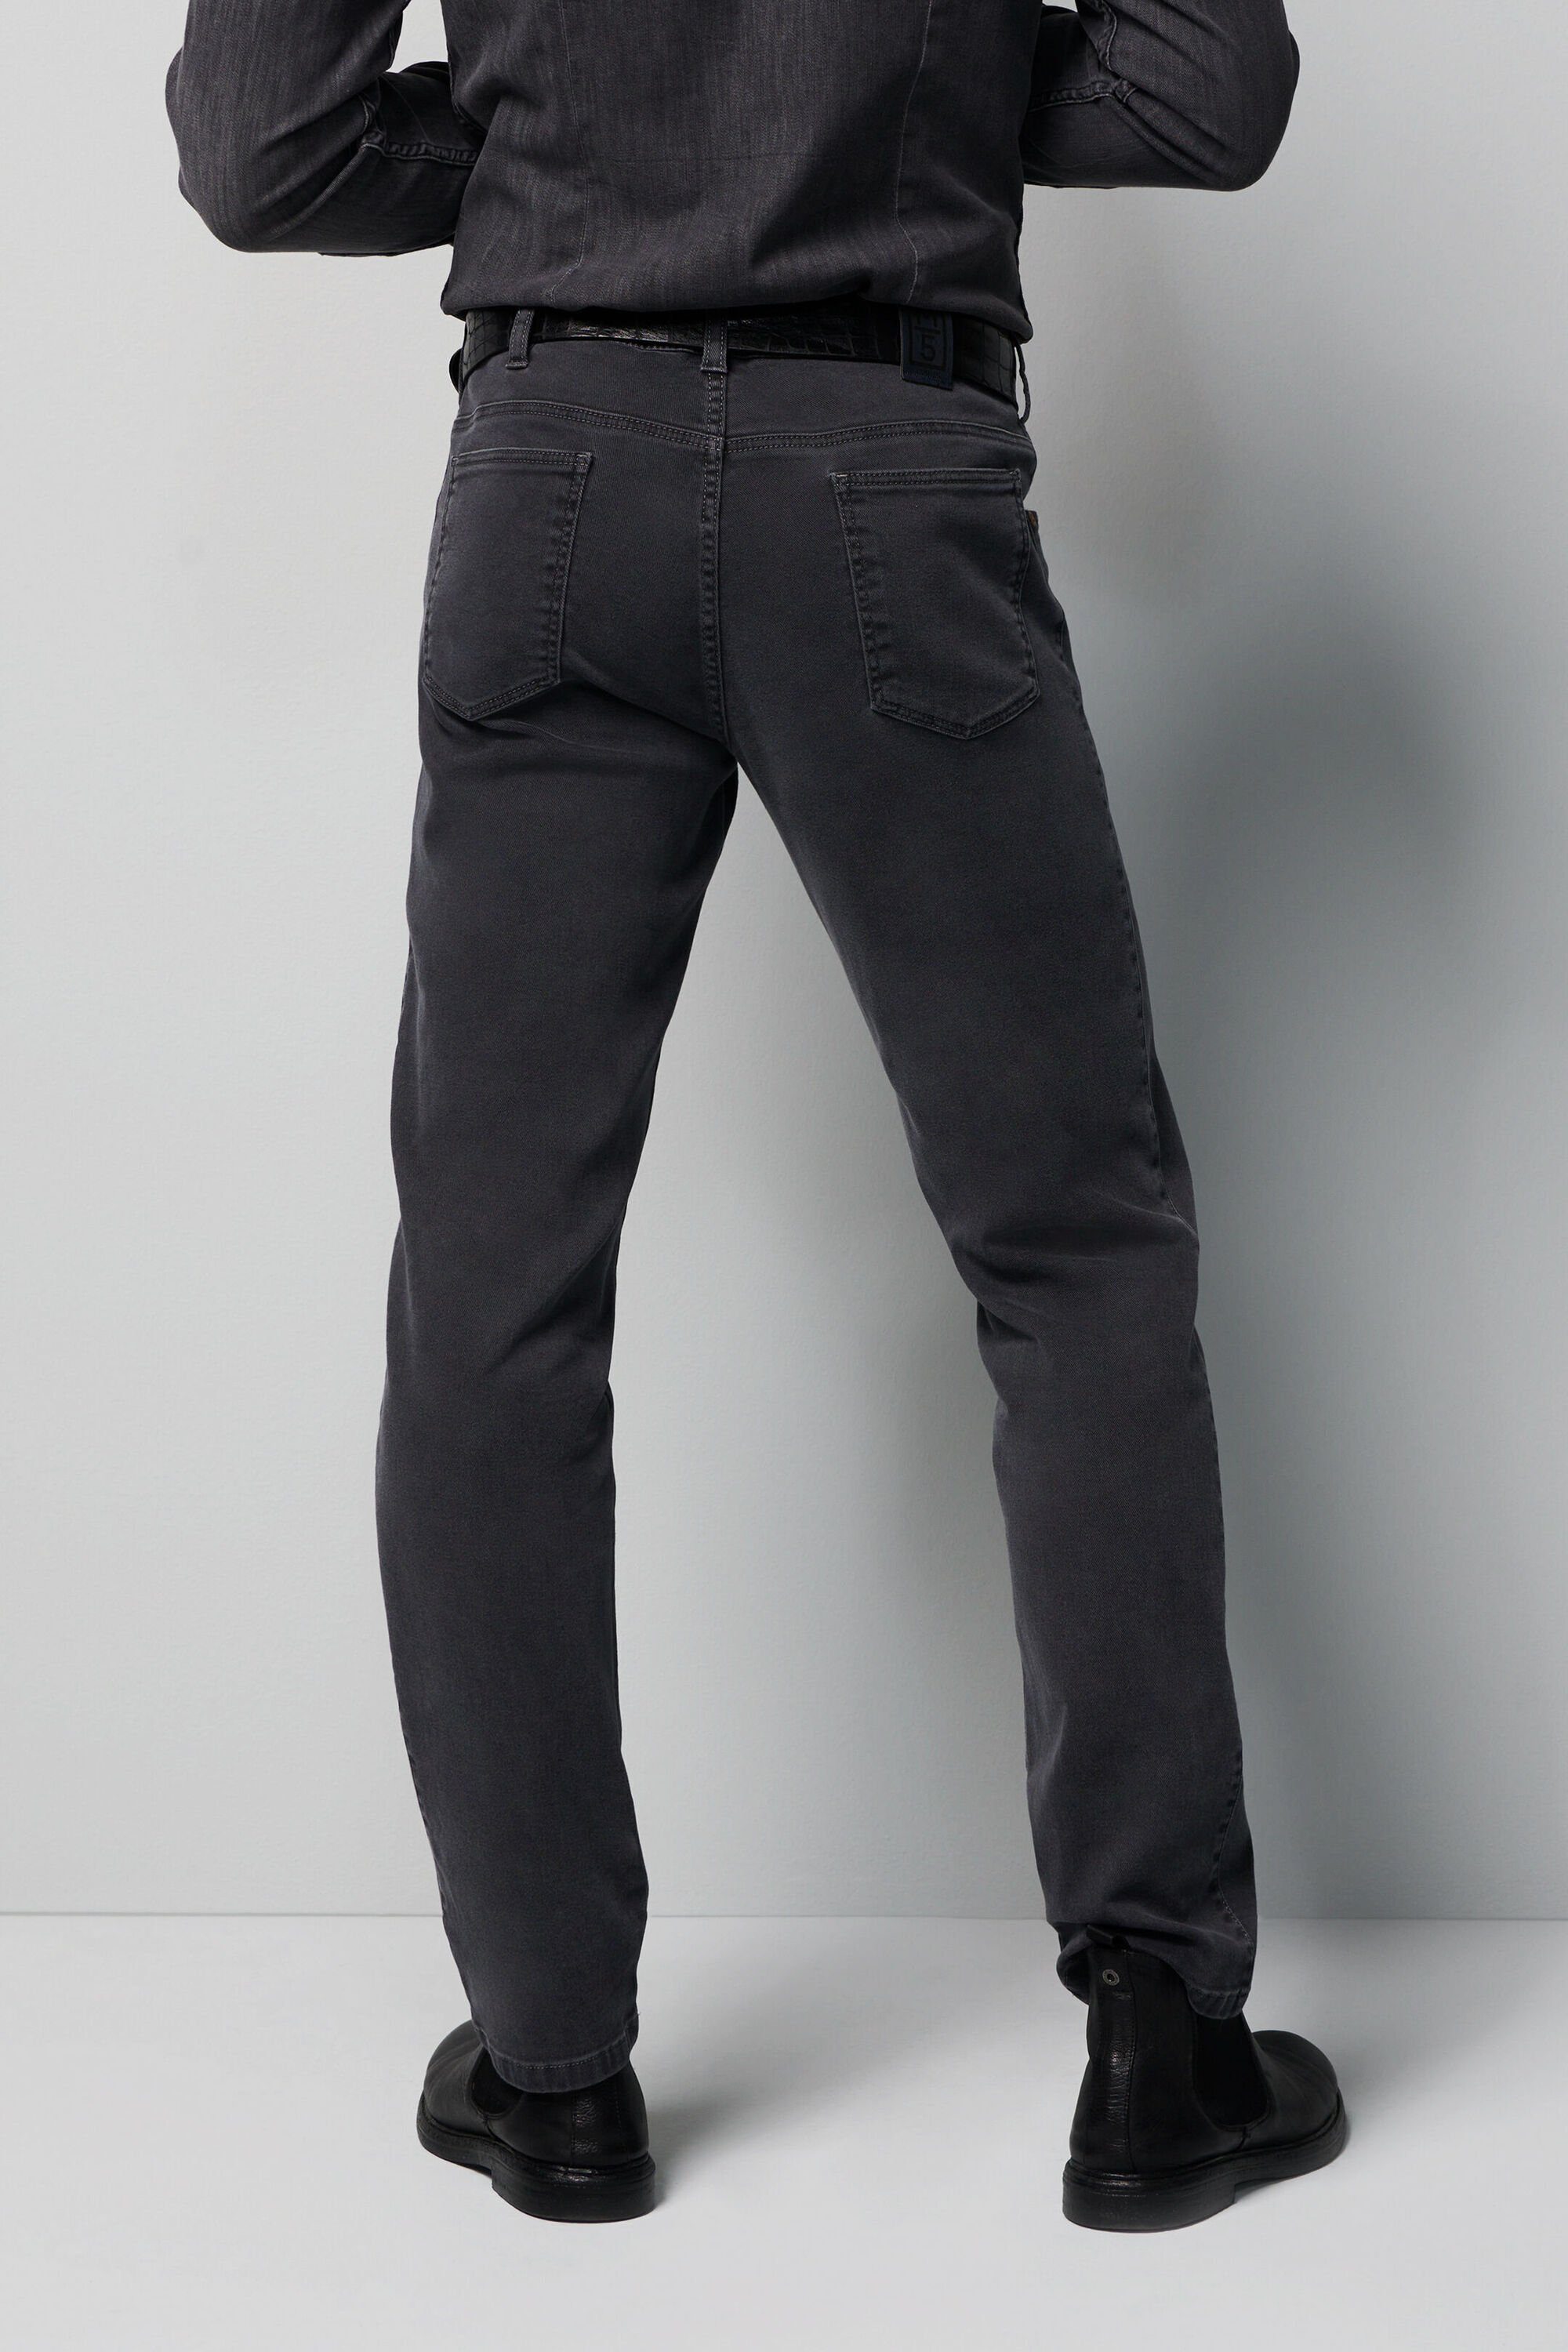 Design im anthrazit unifarbenem 5-Pocket-Jeans MEYER